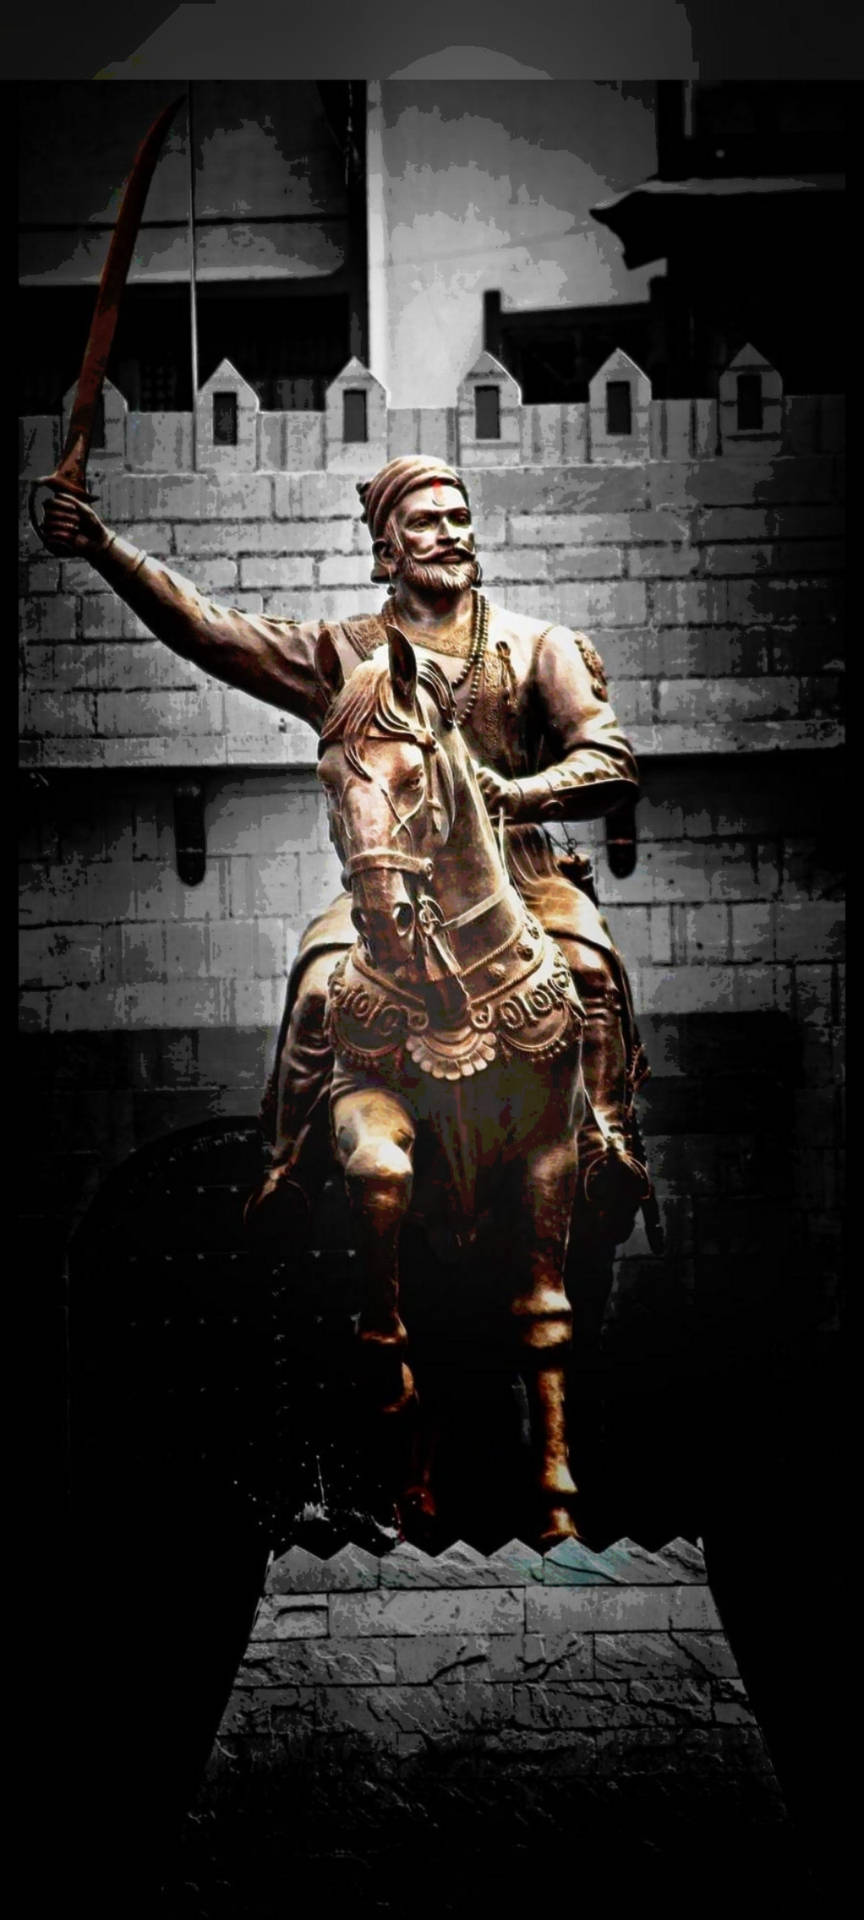 Mighty Chhatrapati Shivaji Maharaj - The Maratha Warrior King. Wallpaper